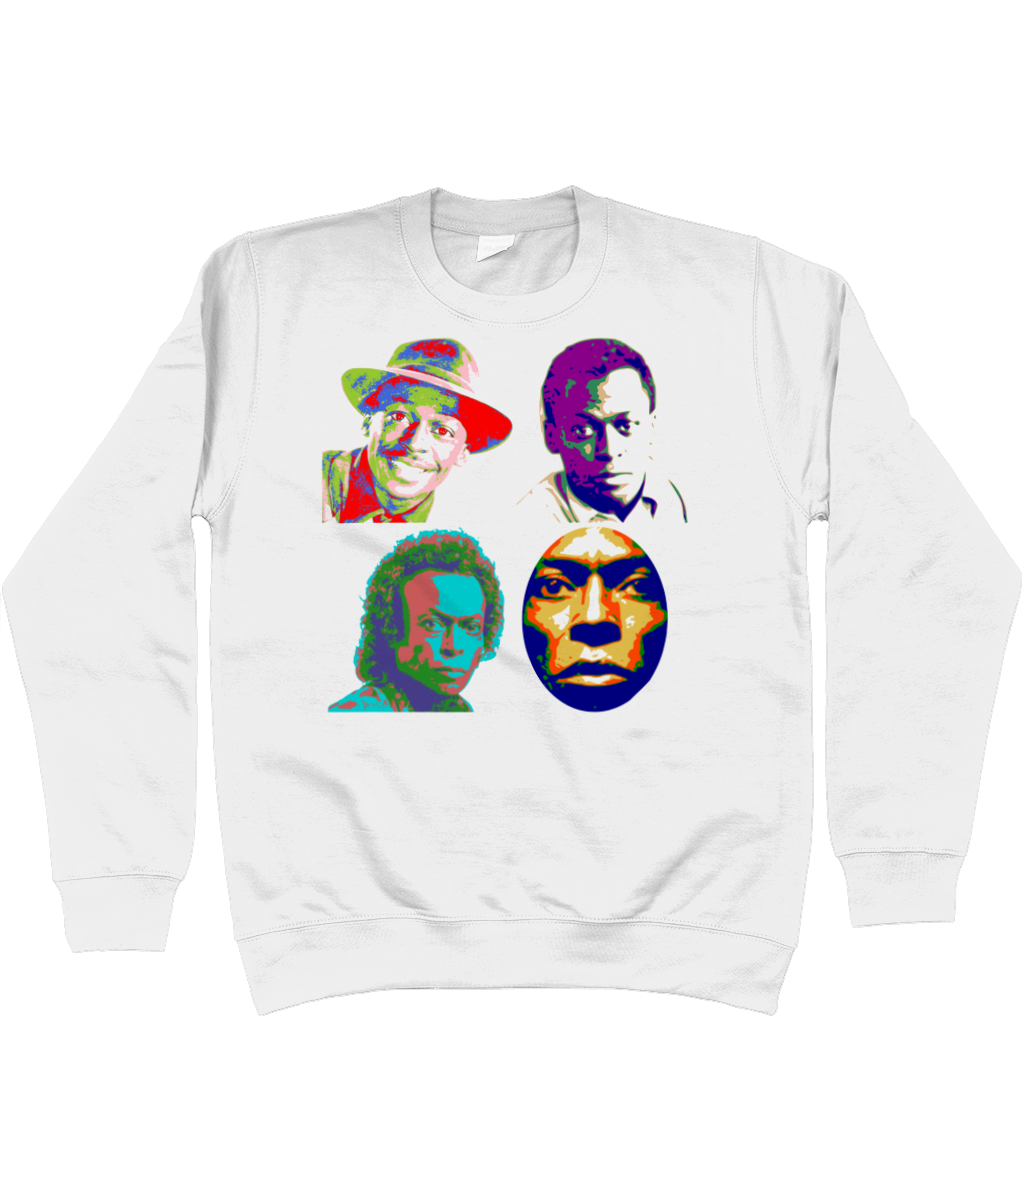 Miles Davis sweatshirt